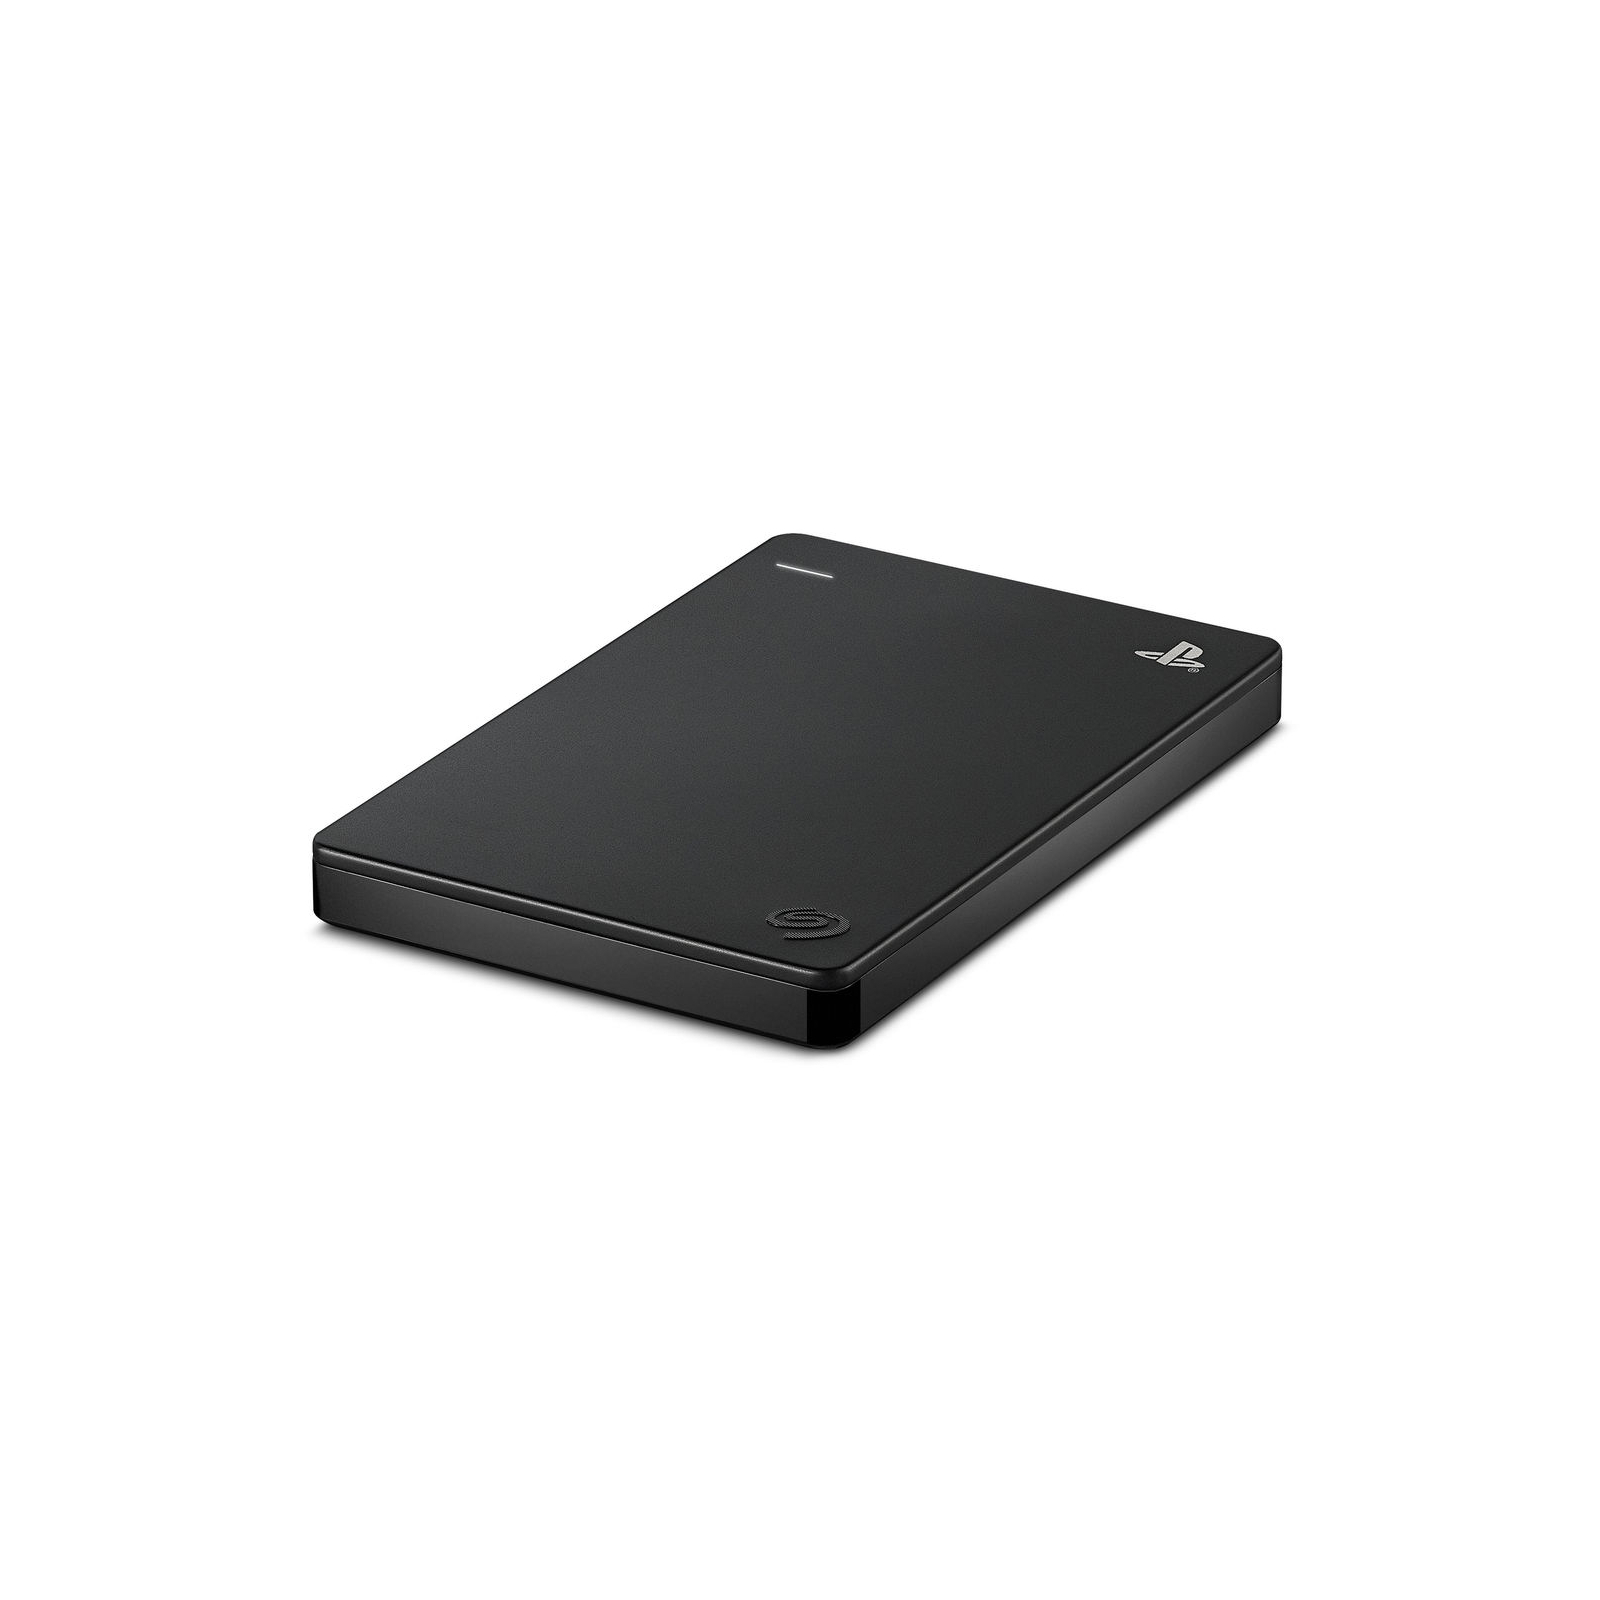 Зовнішній жорсткий диск 2.5" 2TB Game Drive for PlayStation 4 Seagate (STGD2000202) зображення 3